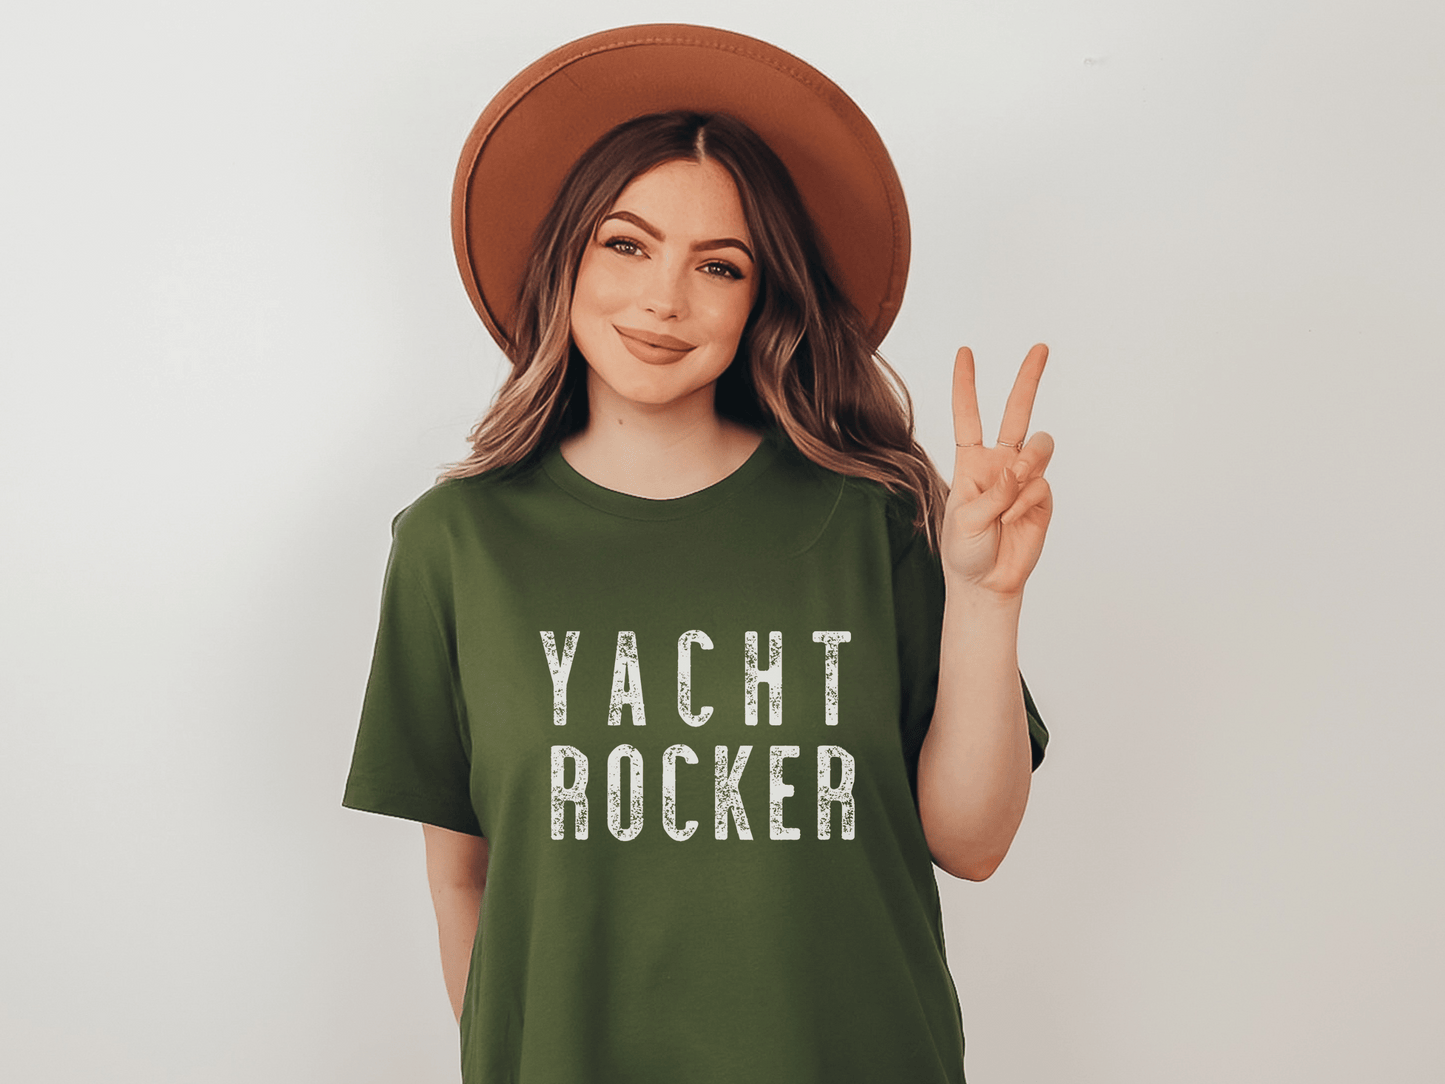 Yacht Rocker T-Shirt in Olive